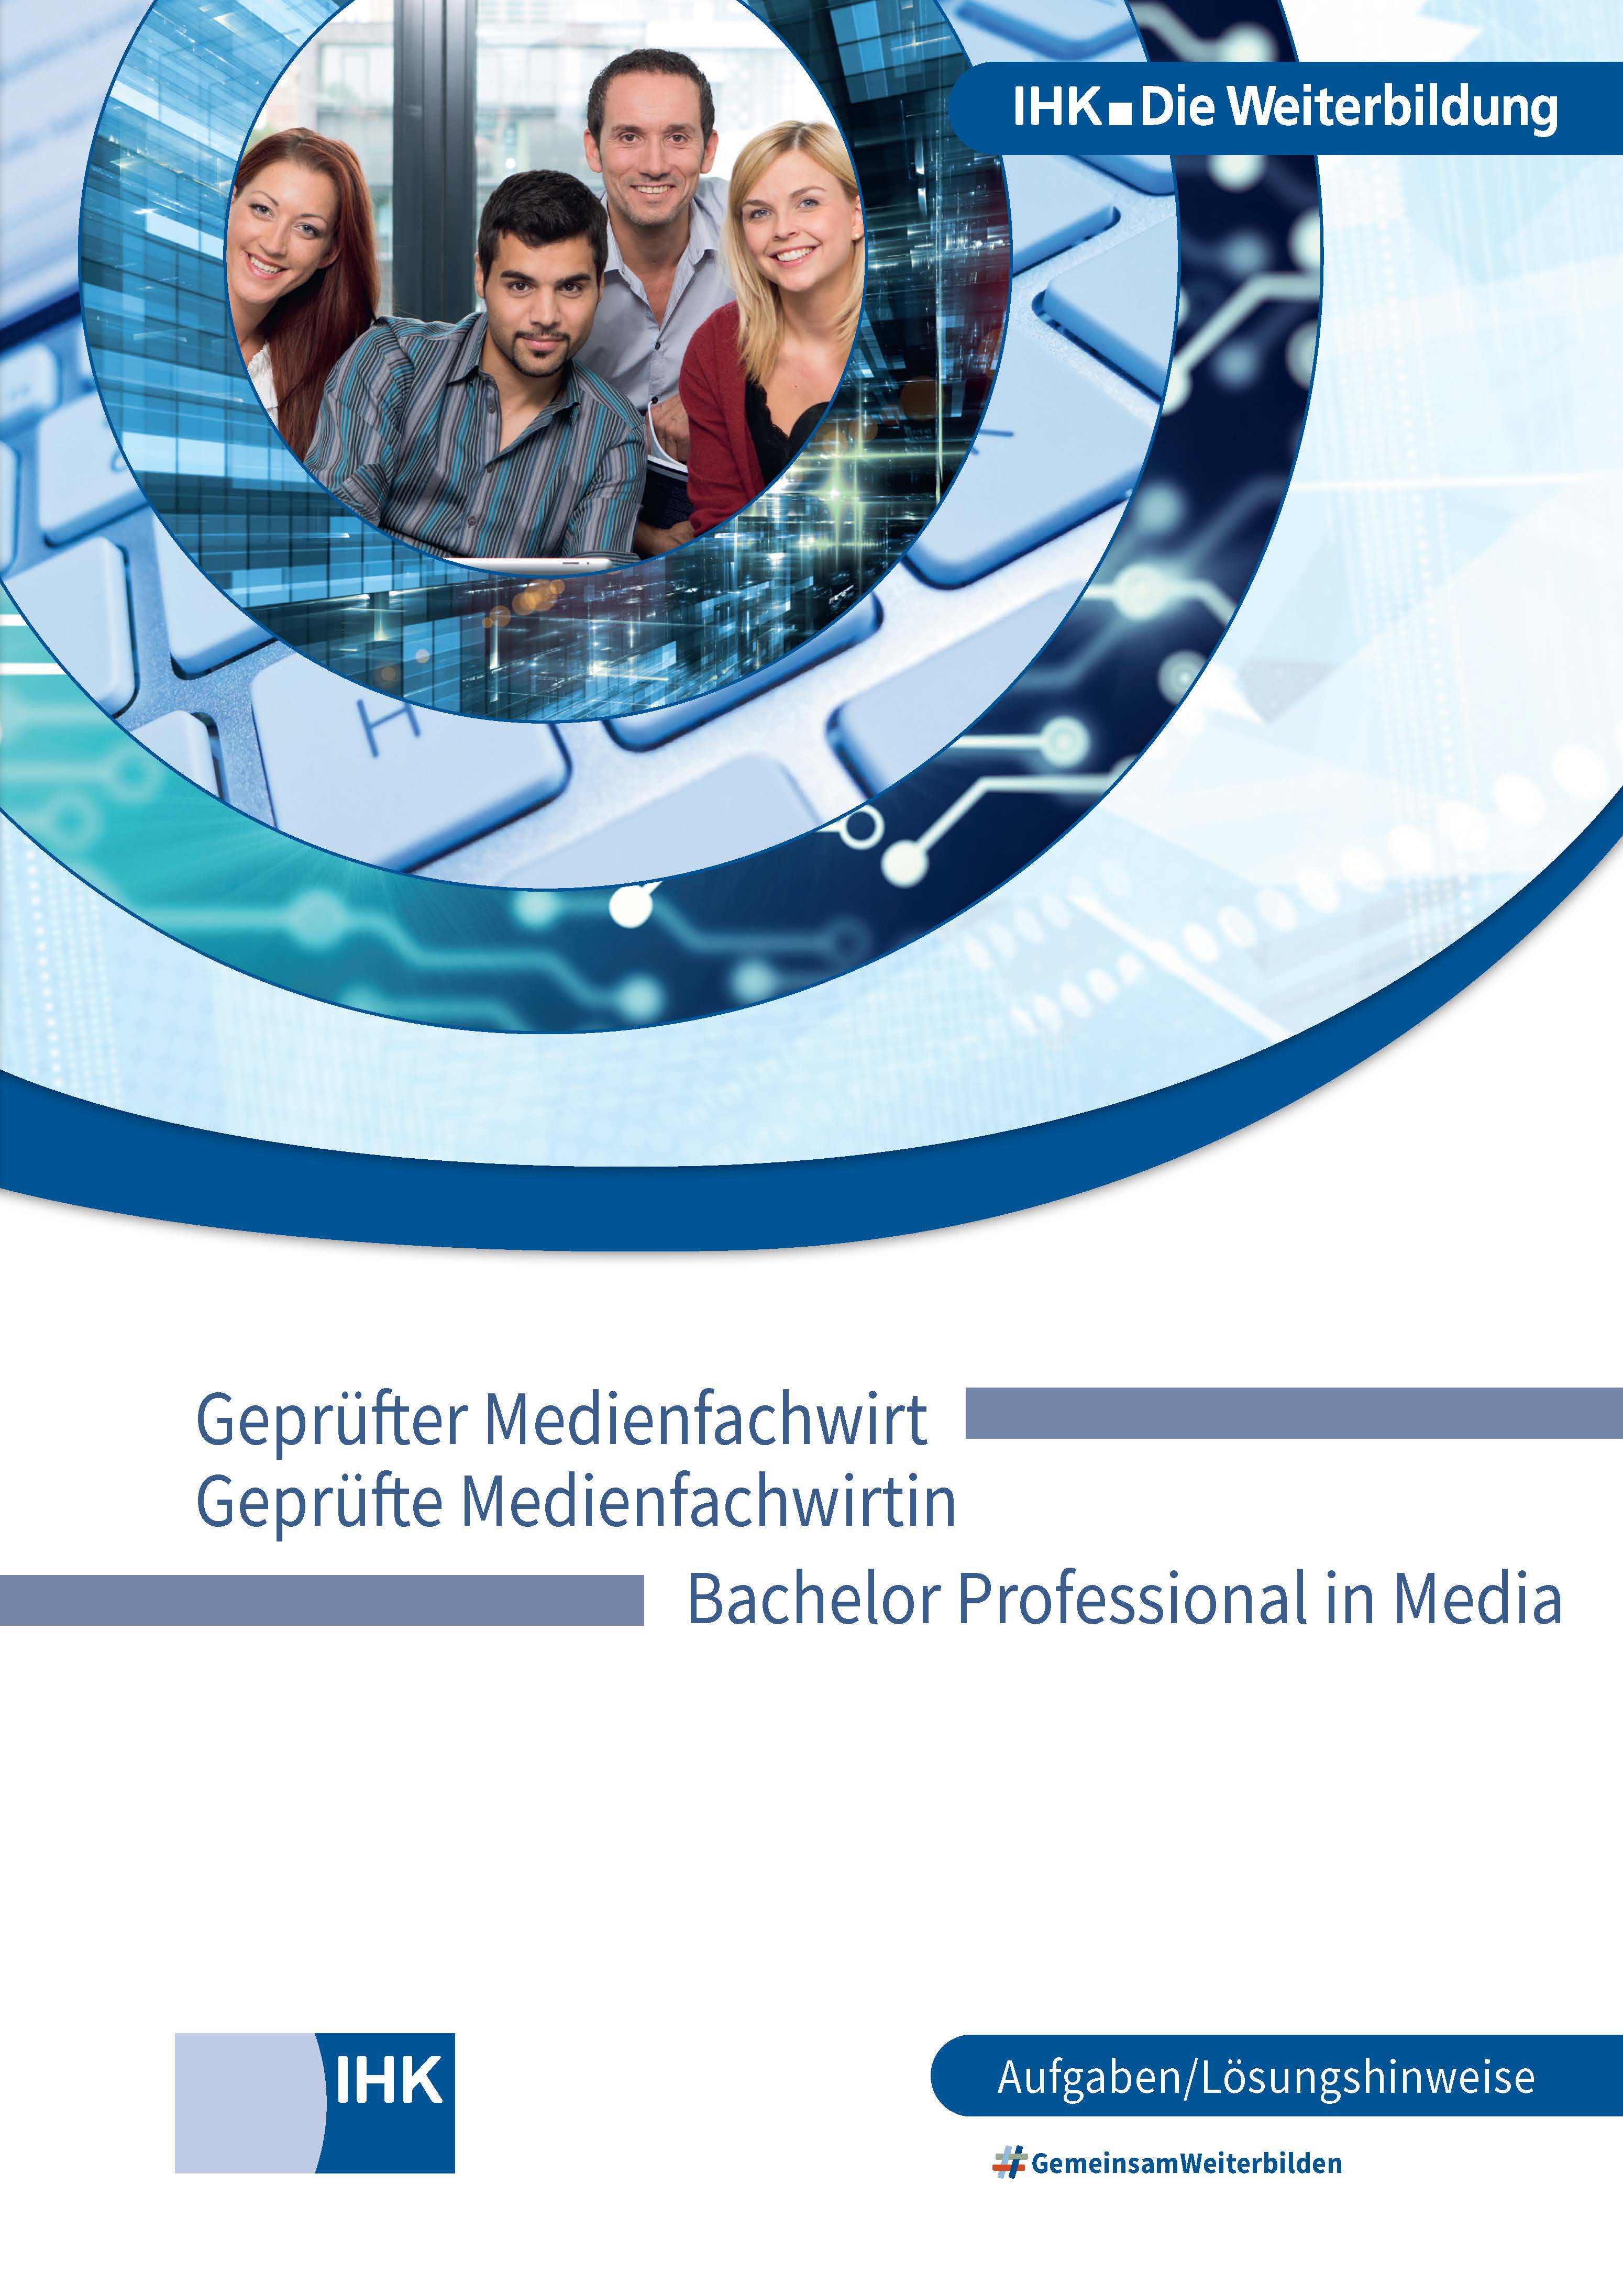 Geprüfte Medienfachwirte – Bachelor Professional in Media